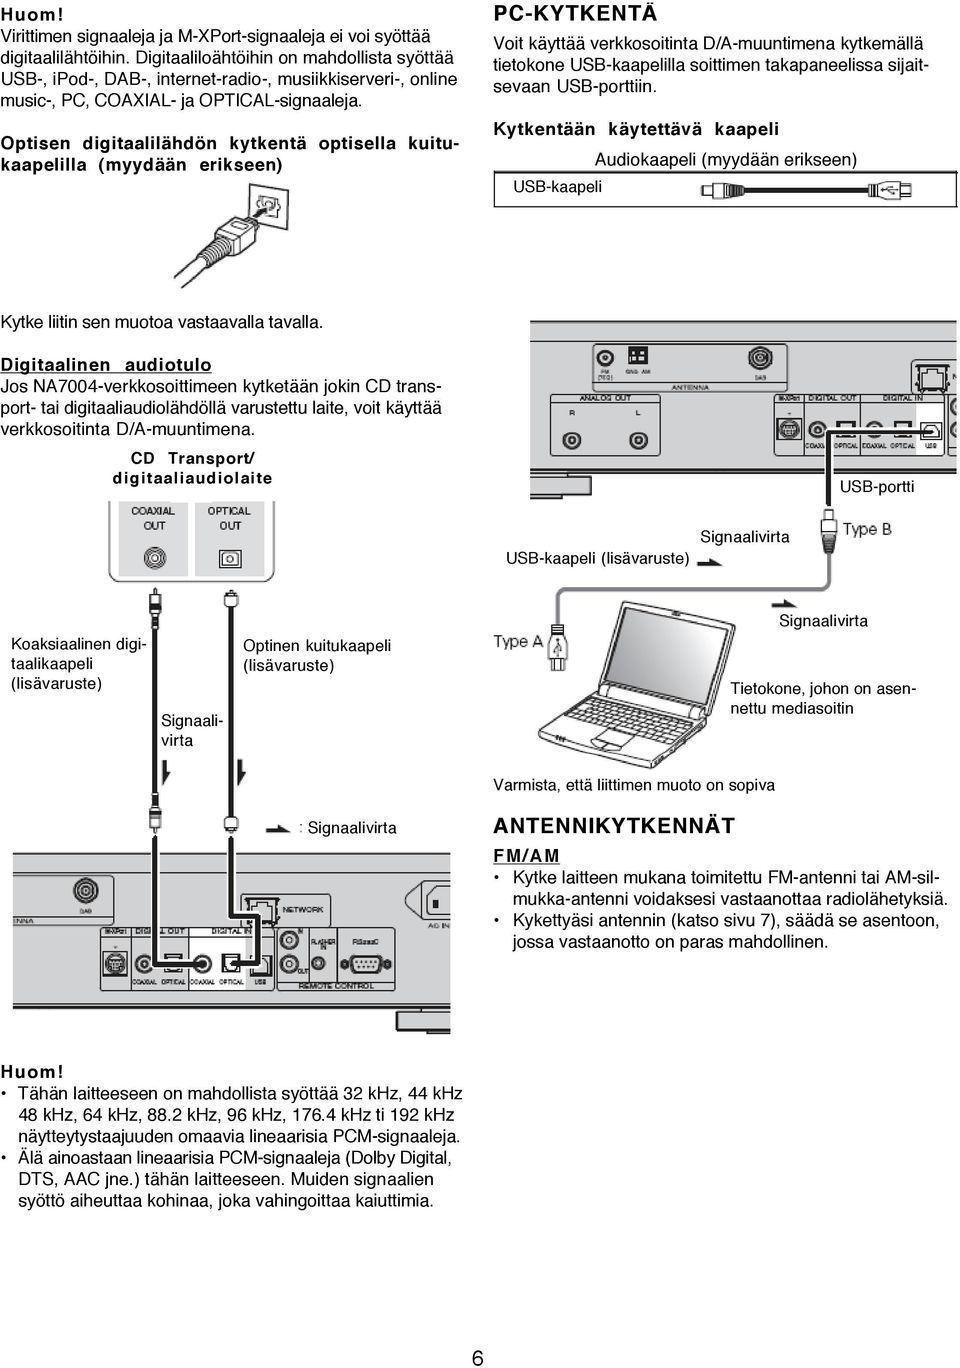 Optisen digitaalilähdön kytkentä optisella kuitukaapelilla (myydään erikseen) PC-KYTKENTÄ Voit käyttää verkkosoitinta D/A-muuntimena kytkemällä tietokone USB-kaapelilla soittimen takapaneelissa